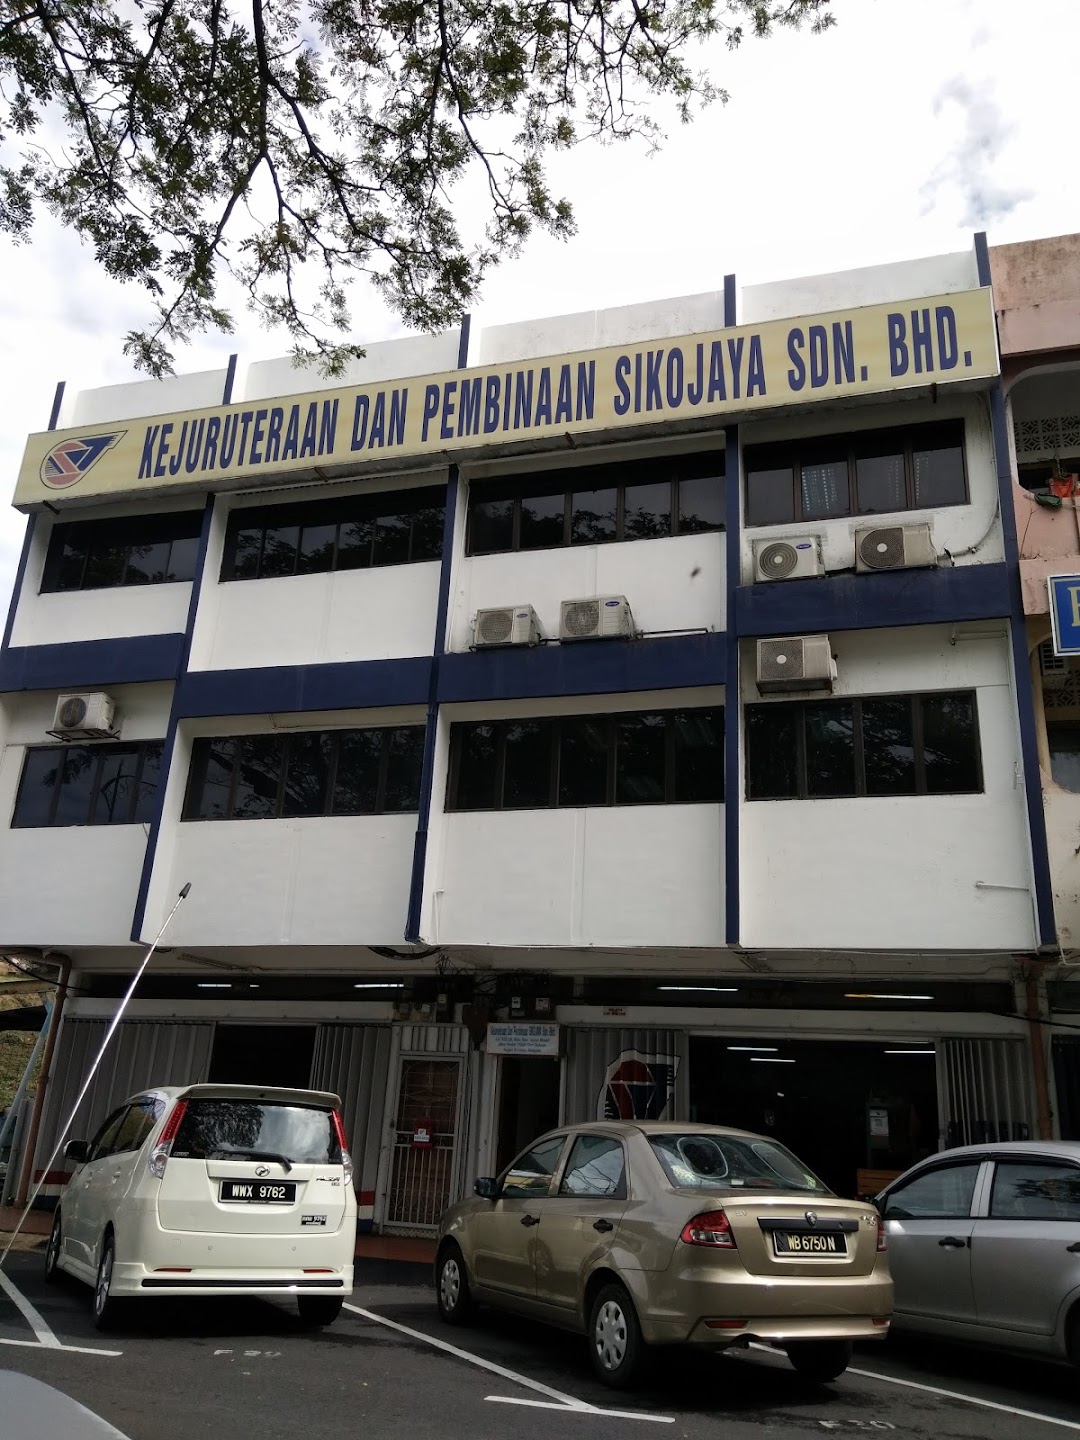 Kejuruteraan Dan Pembinaan Sikojaya Sdn. Bhd.